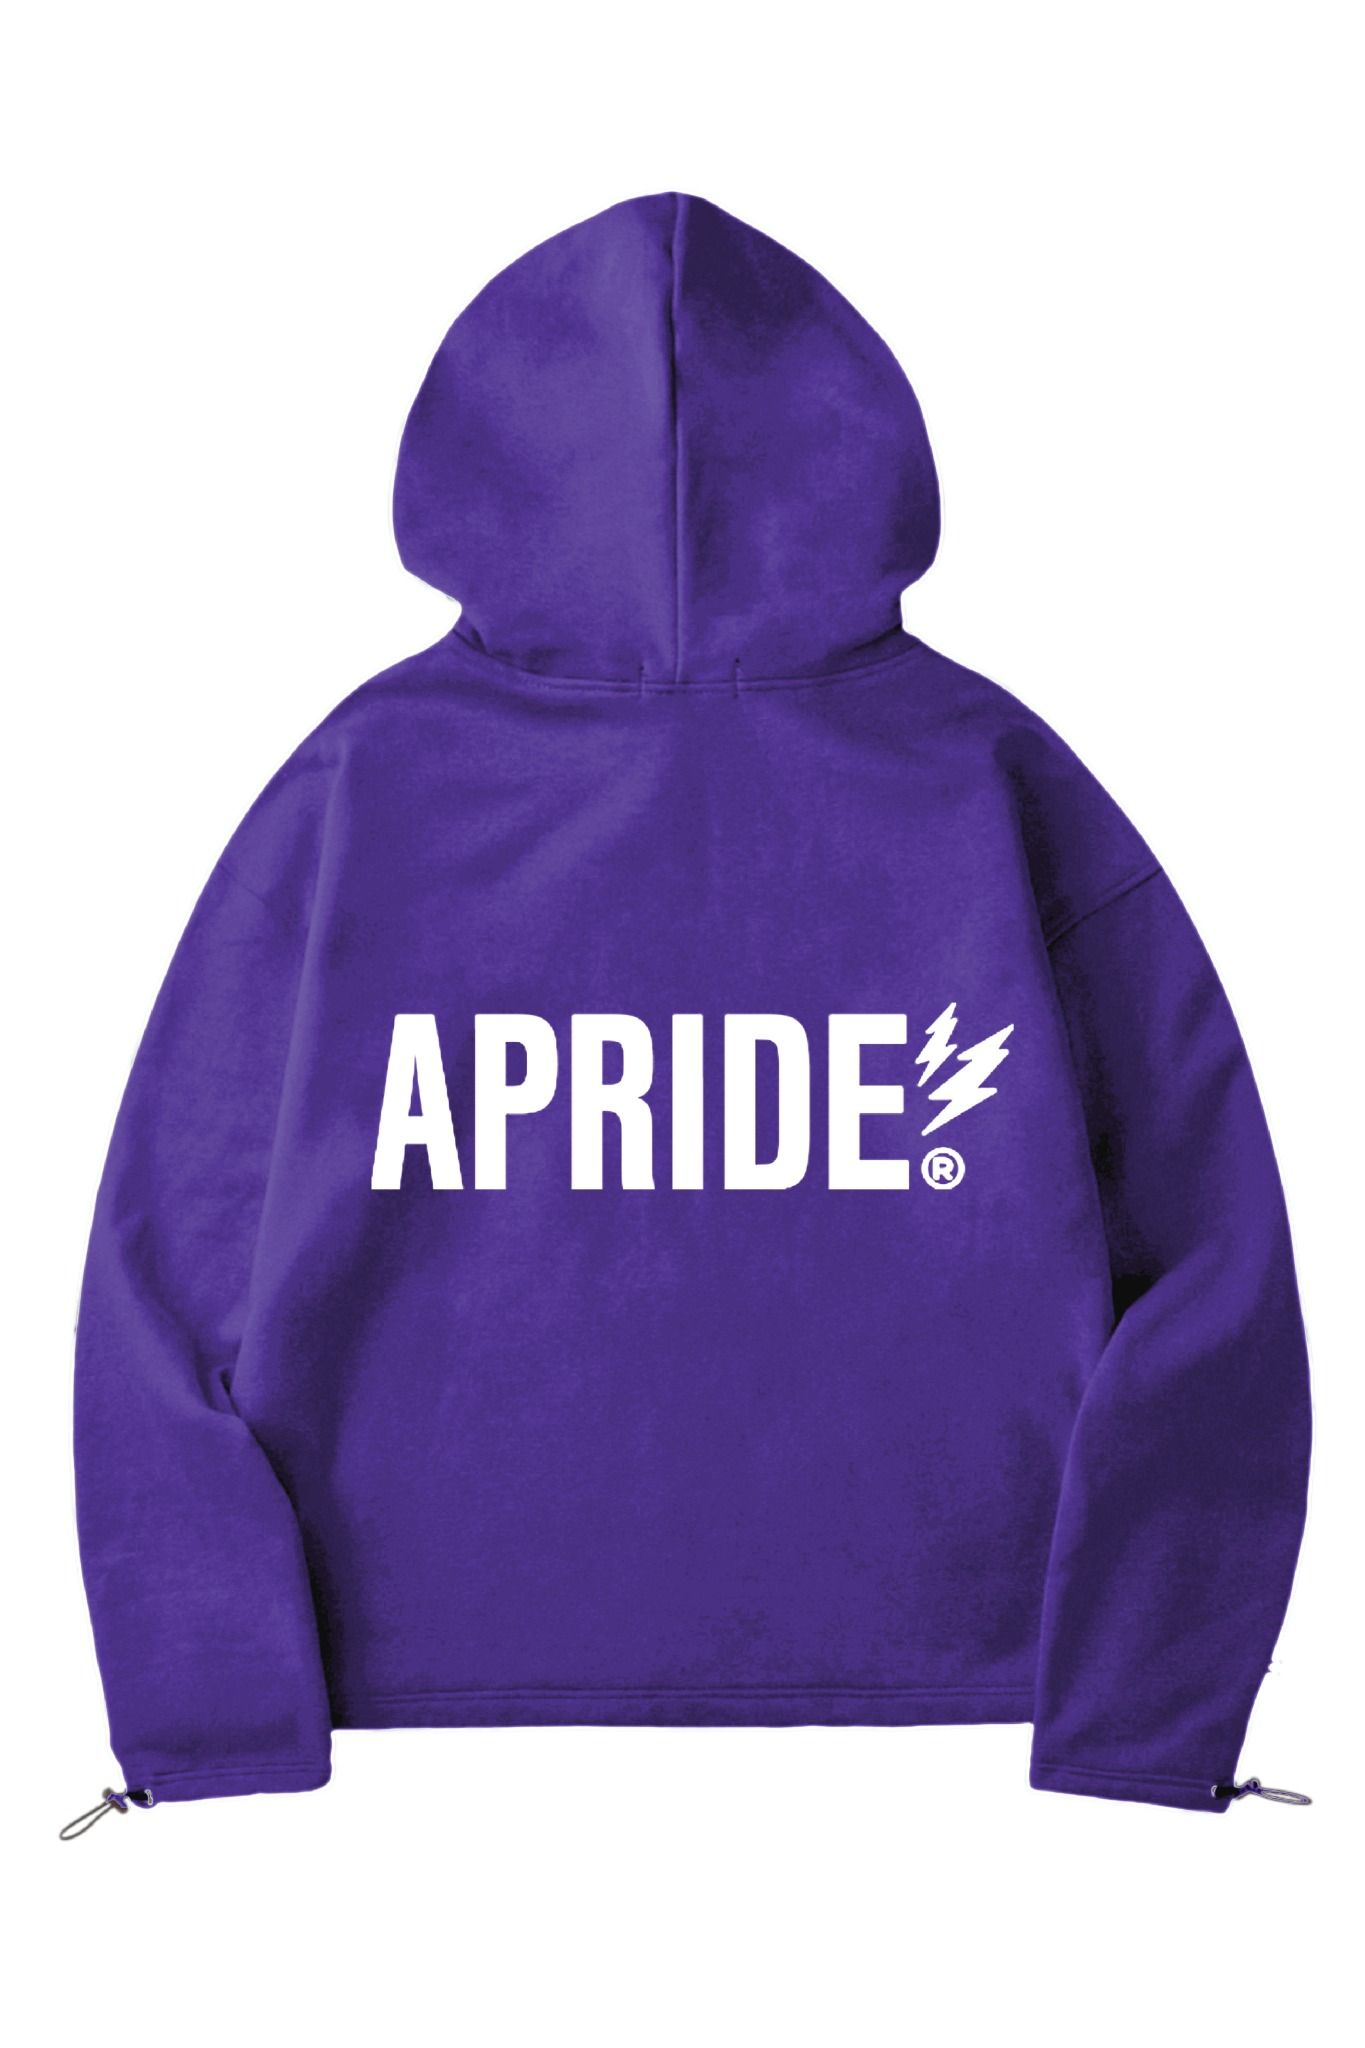  Apride Hoodies Basic Violet 